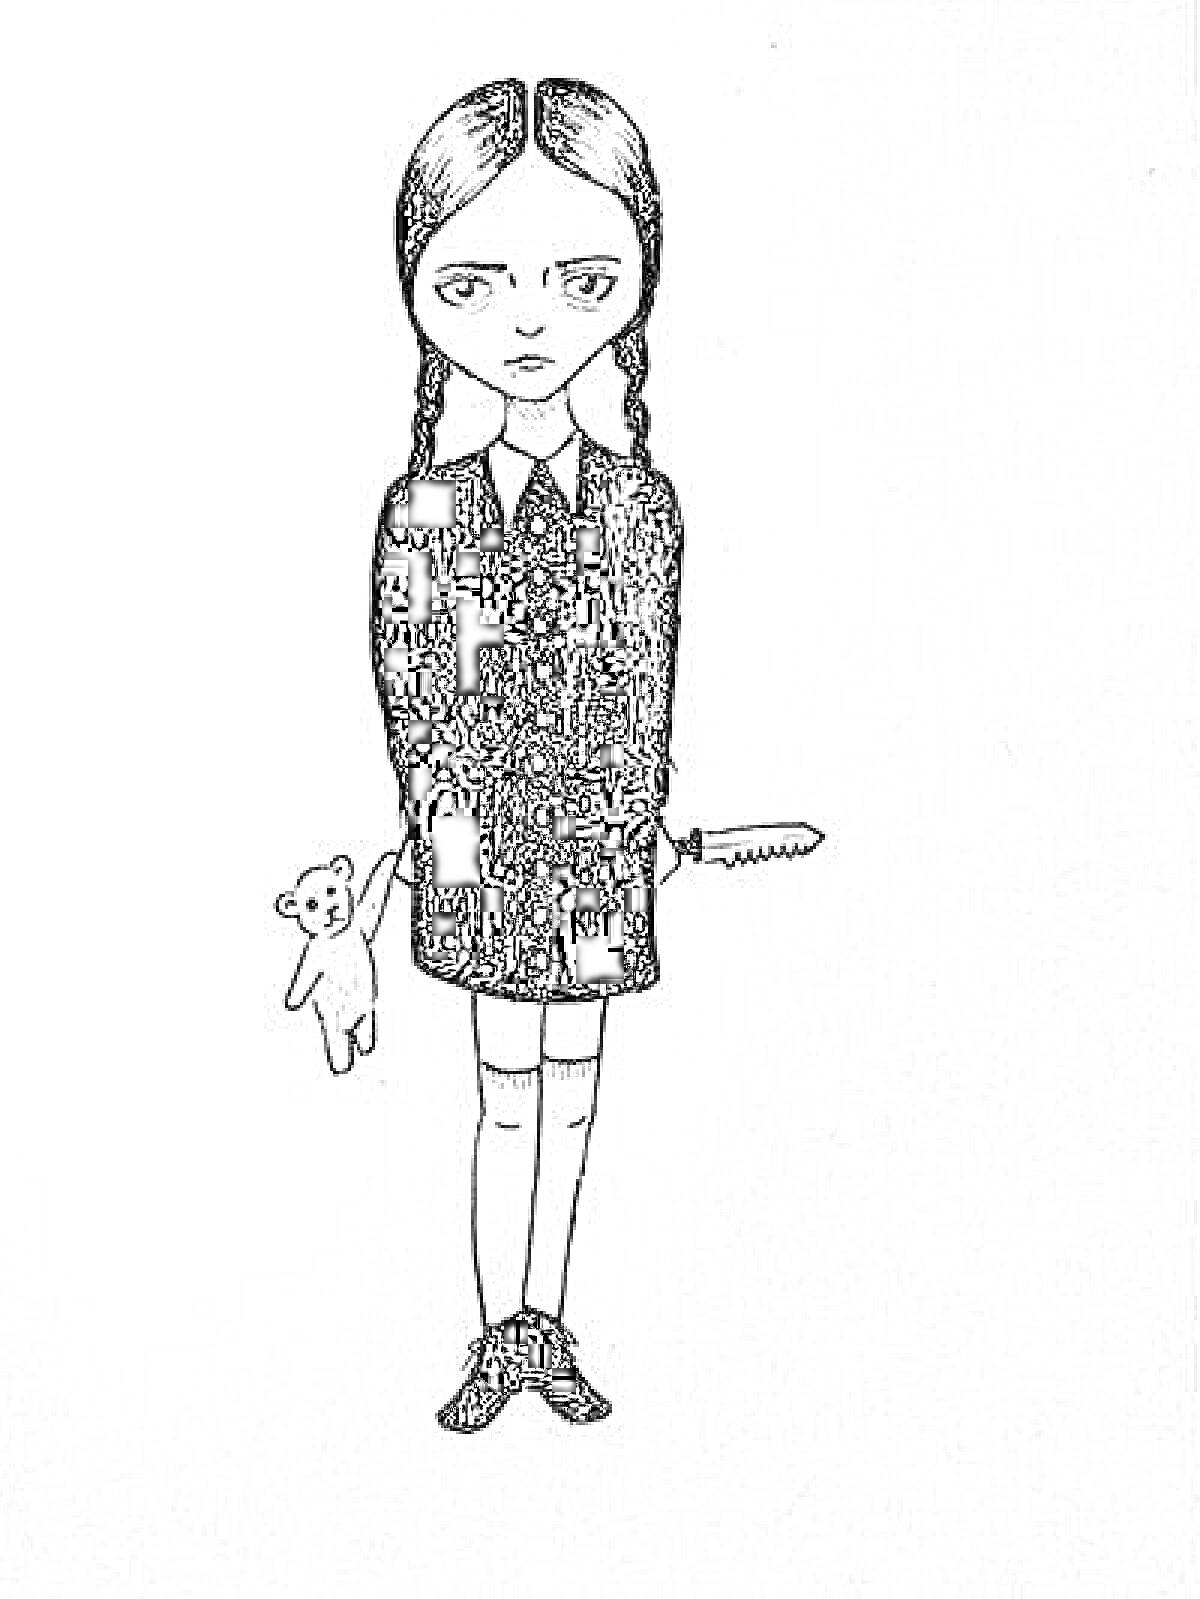 Девочка в черном платье с косичками и мишкой, держащая нож